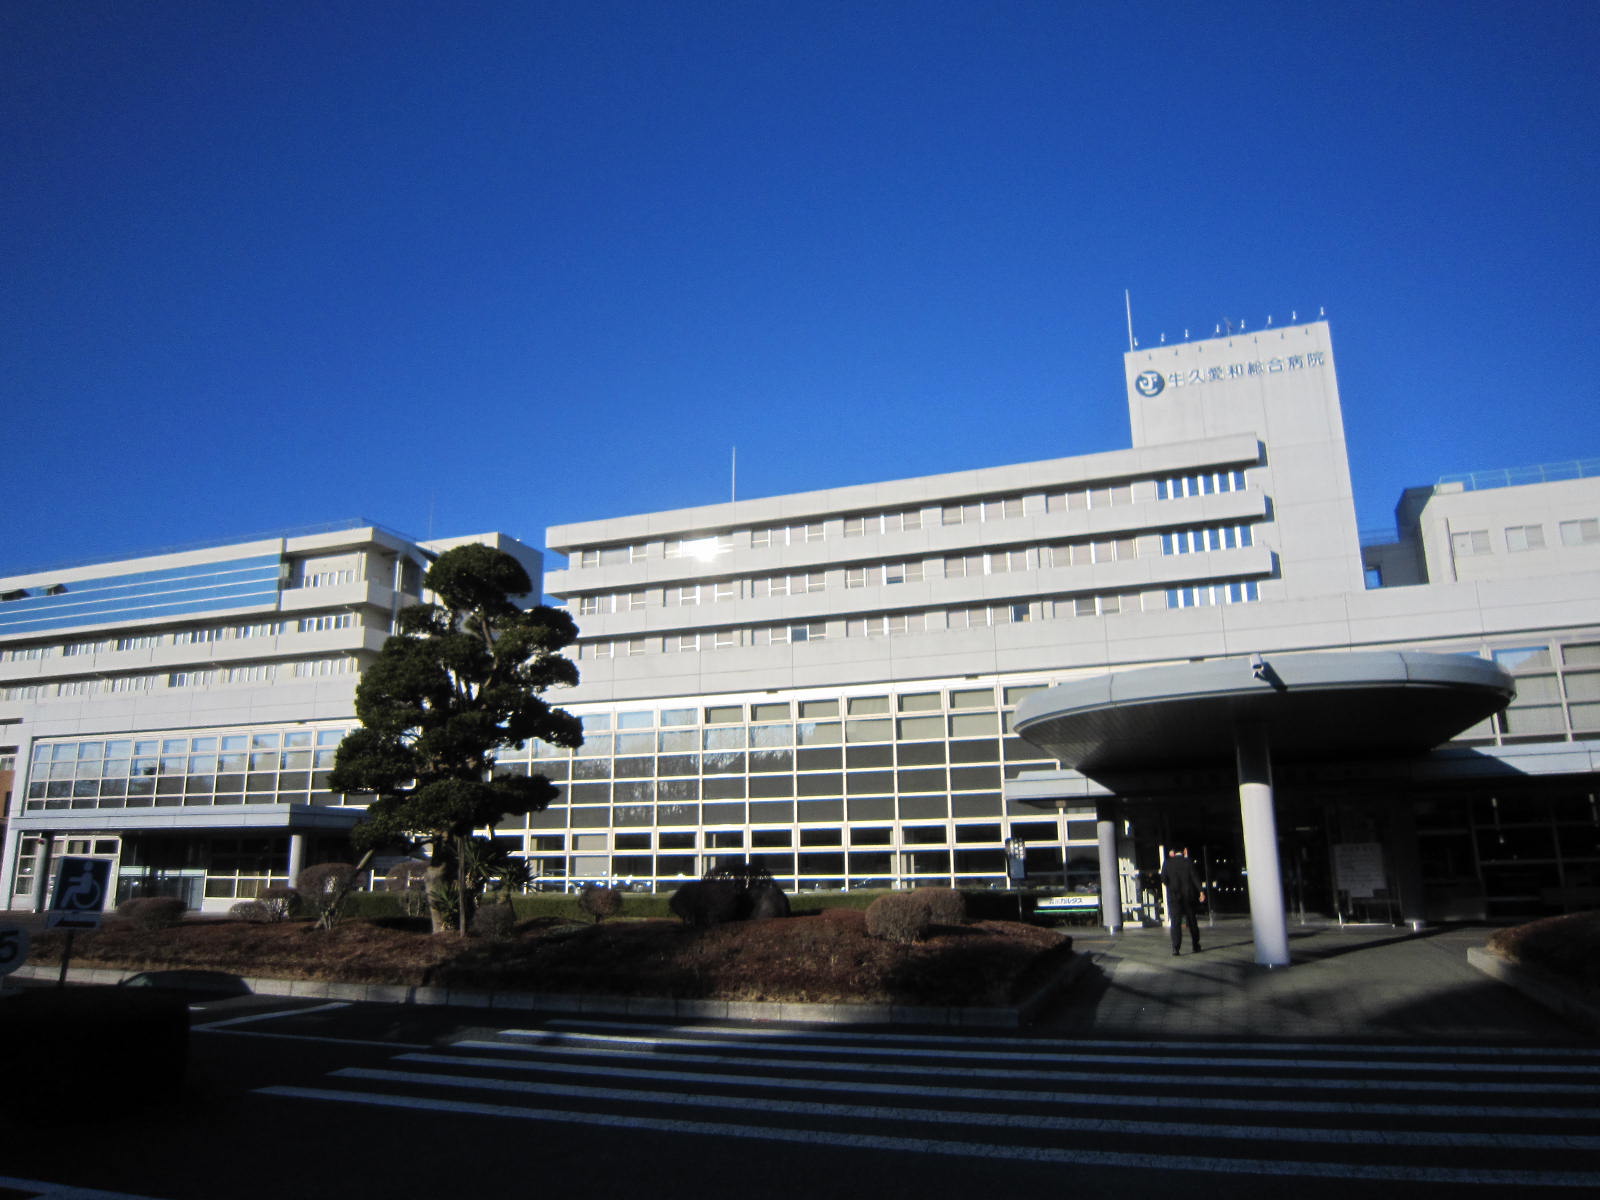 Hospital. Ushikuaiwasogobyoin until the (hospital) 910m